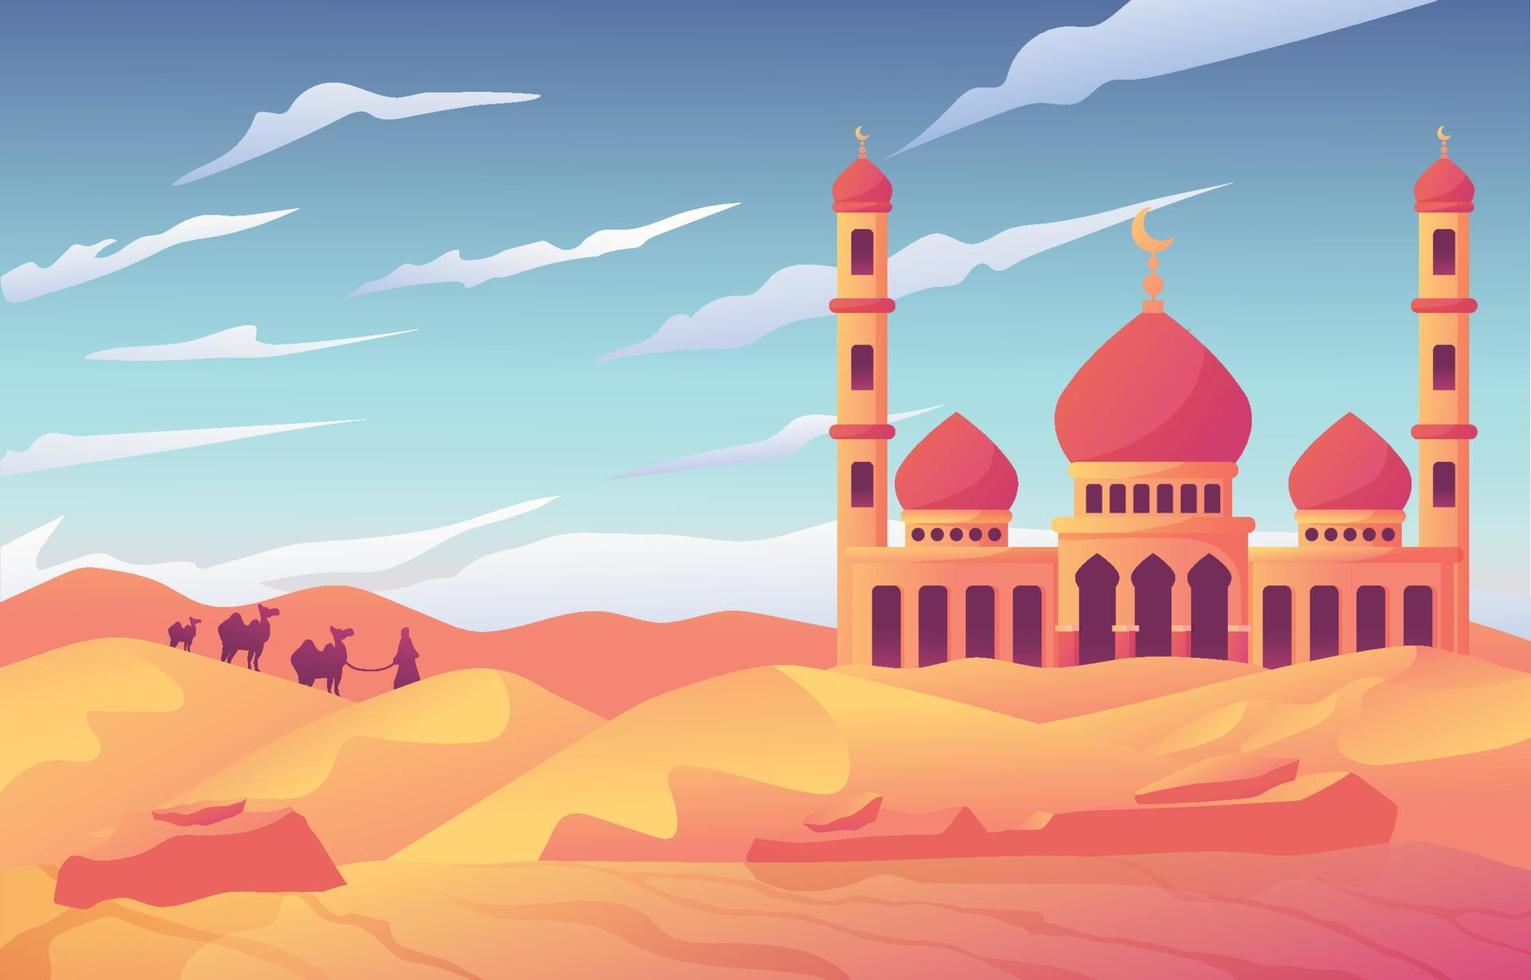 Wüste und Moschee im islamischen Hintergrund vektor